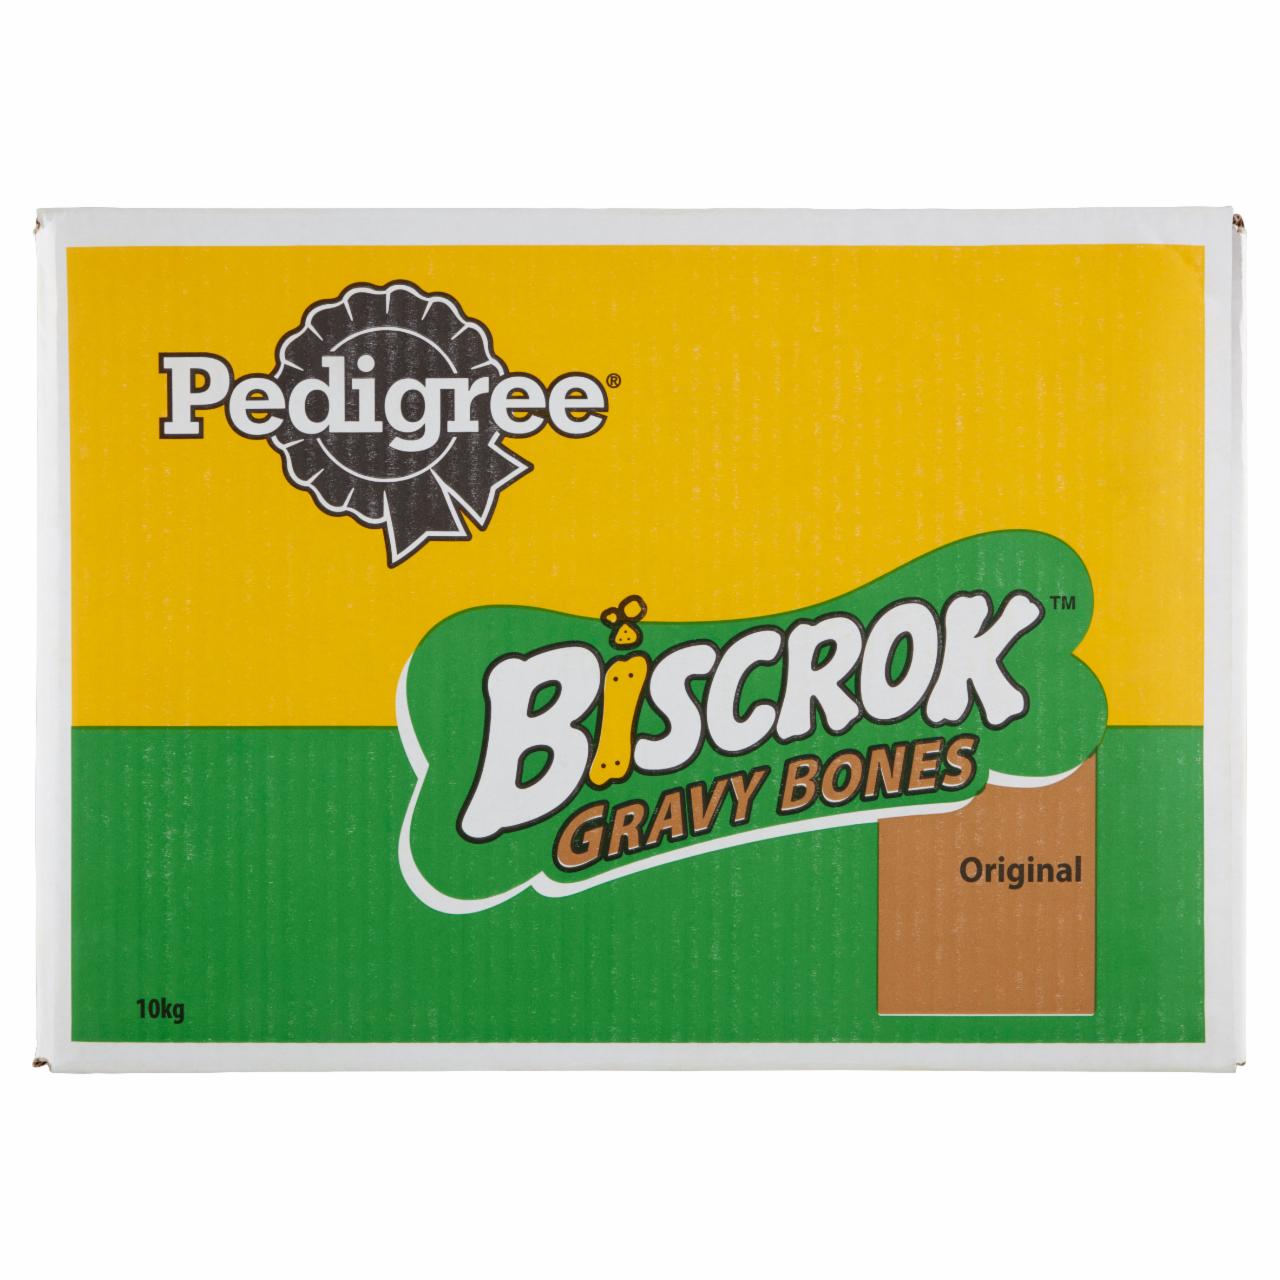 Képek - Pedigree Biscrok Gravy Bones Original kiegészítő állateledel felnőtt kutyák számára 10 kg